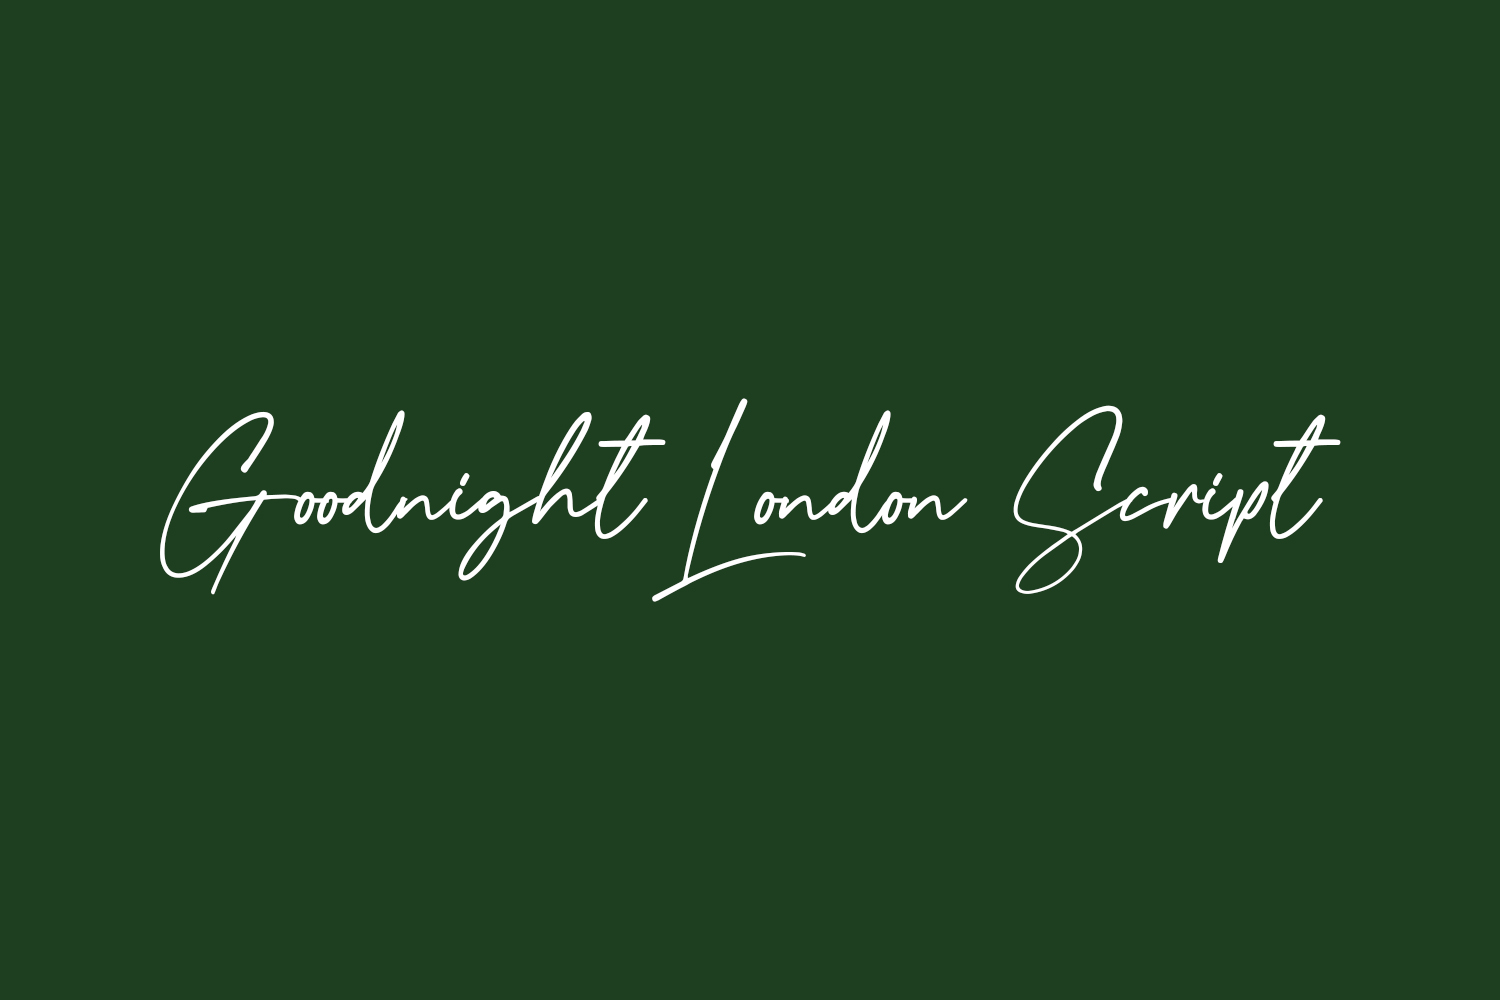 Goodnight London Script Free Font